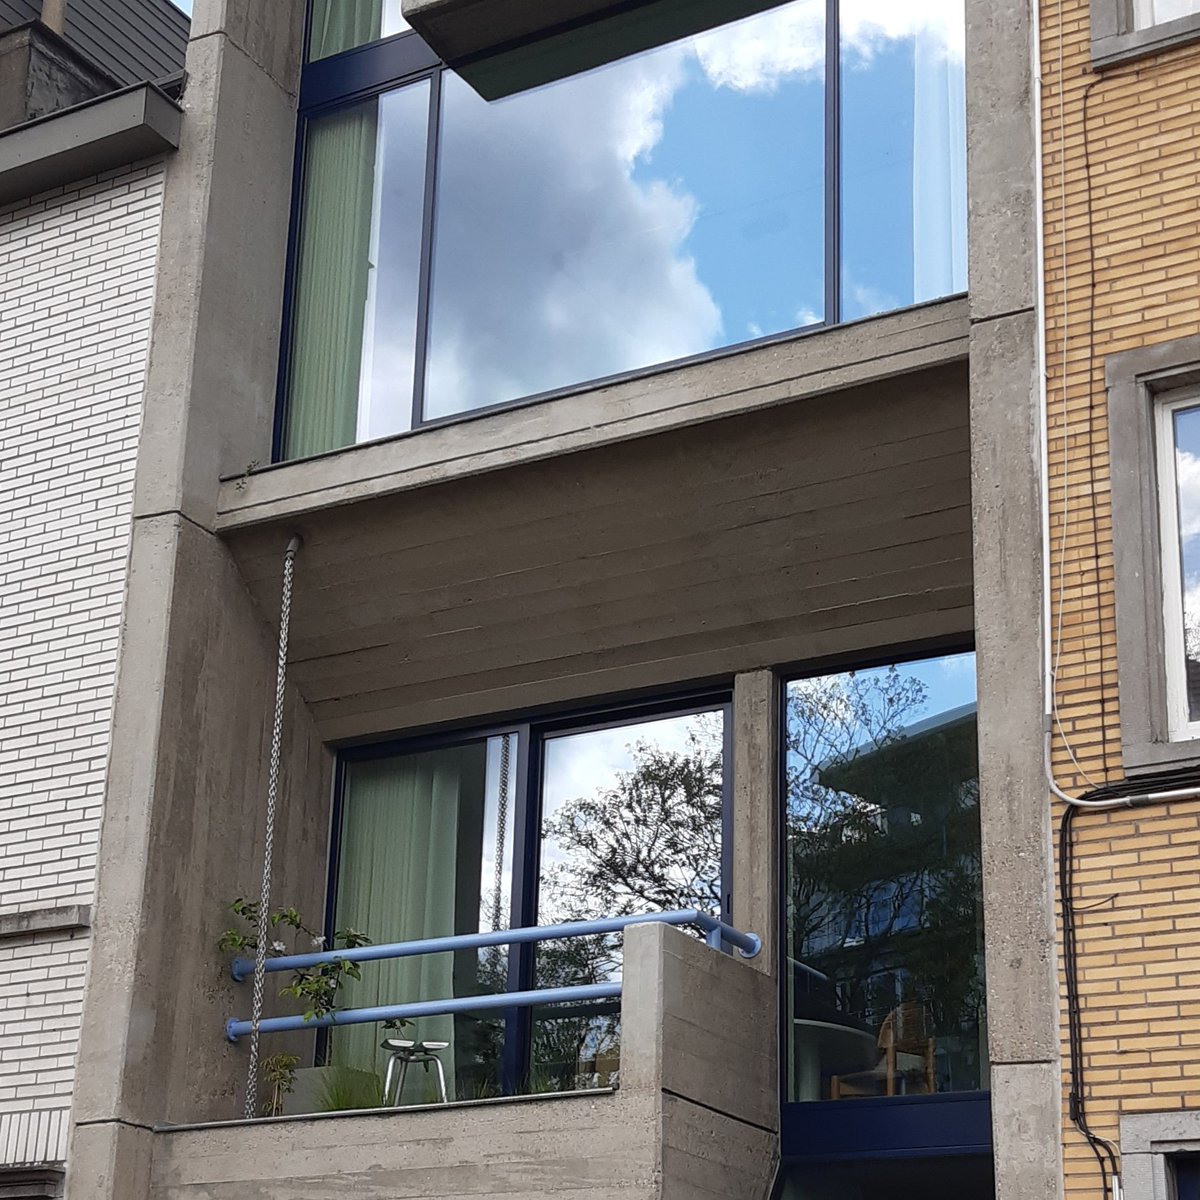 Voor het #BeeldindeKijker deze maand neemt onze collega Els je mee naar de brutalistische stadswoning De Zordo in Gent. Ontdek het hier: beeldbank.onroerenderfgoed.be #BeeldindeKijker #BiK #vlaandereniserfgoed #brutalisme @Stadgent